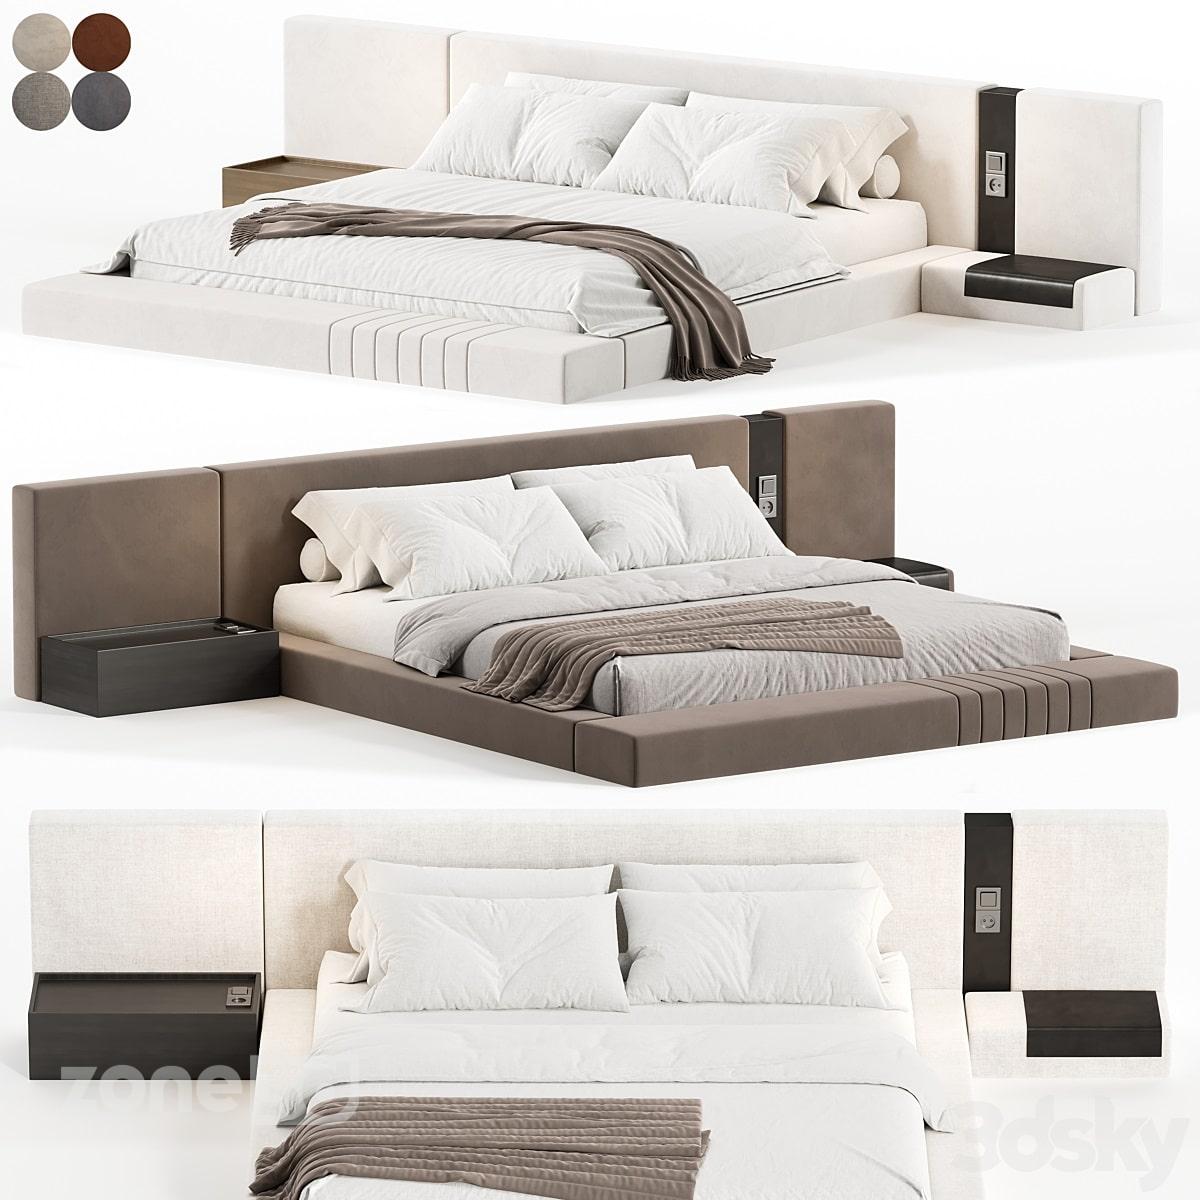 آبجکت ست تخت خواب دو نفره راحتی مدرن با تاج تخت پارچه ای و میز چوبی neapol